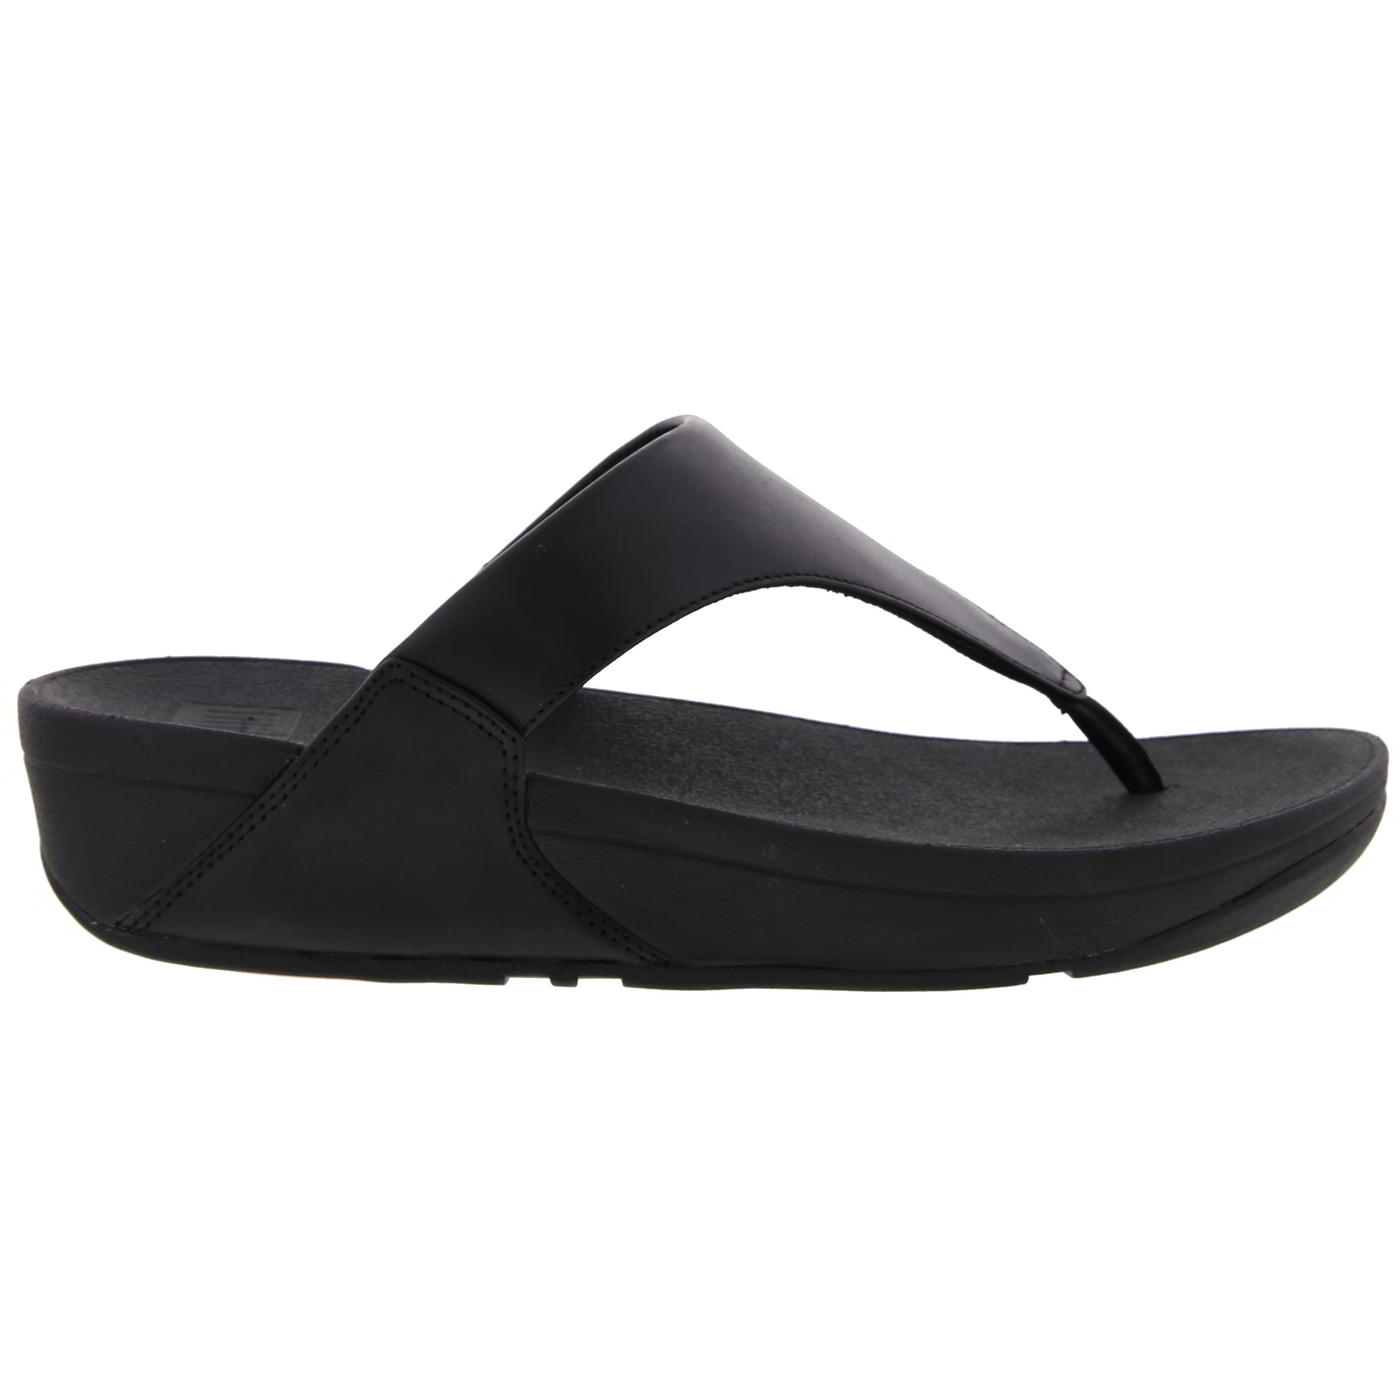 FitFlop Women's Lulu Toe Post Leather Flip Flop Sandals - UK 4